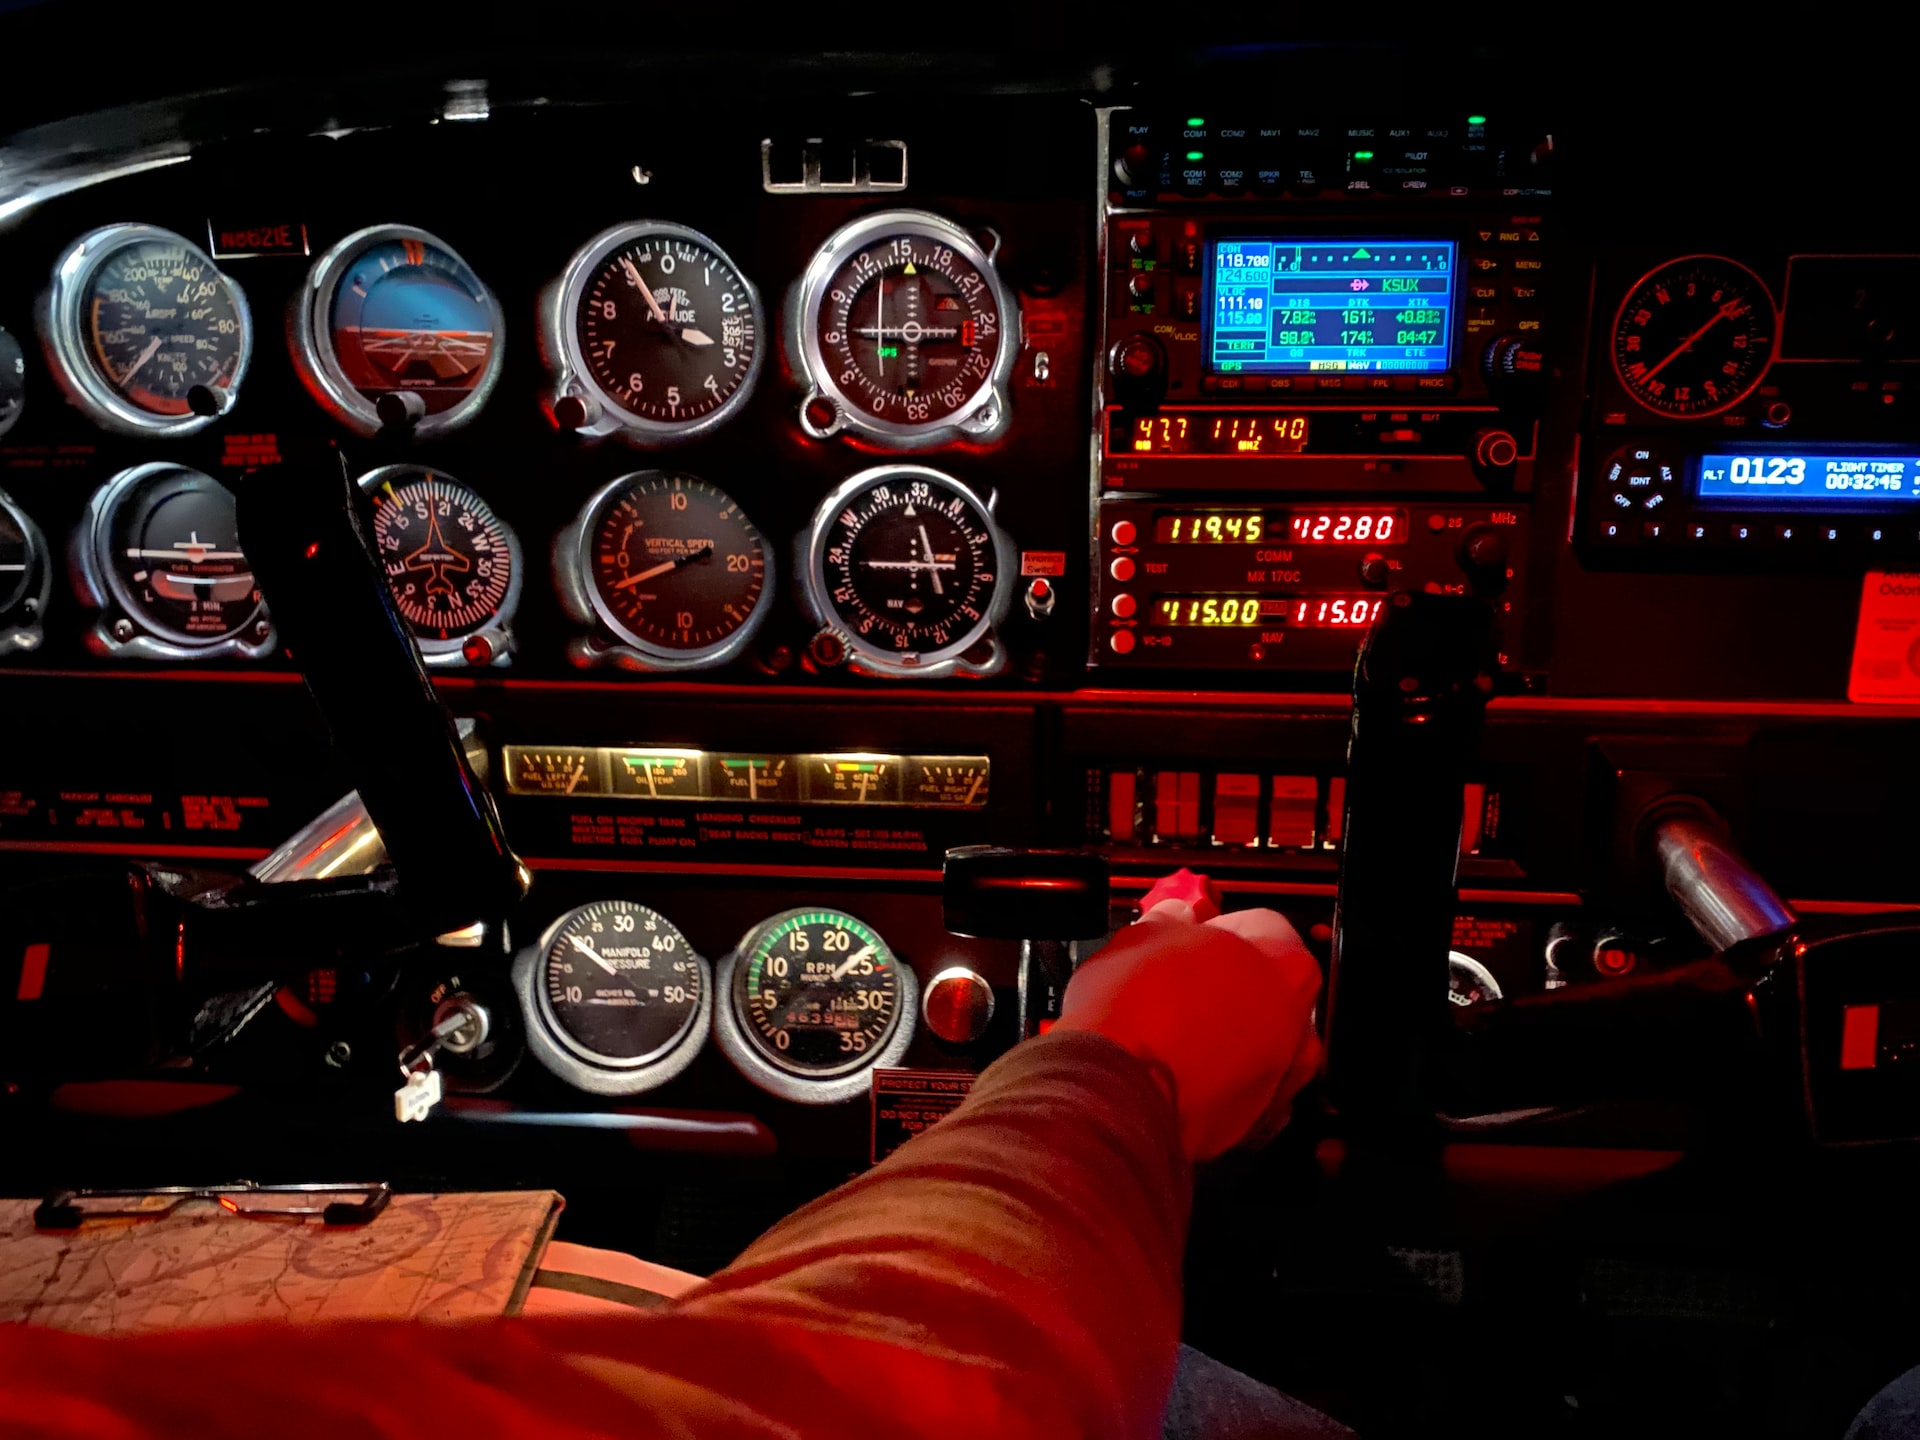 A pilot in command adjusting flight controls.